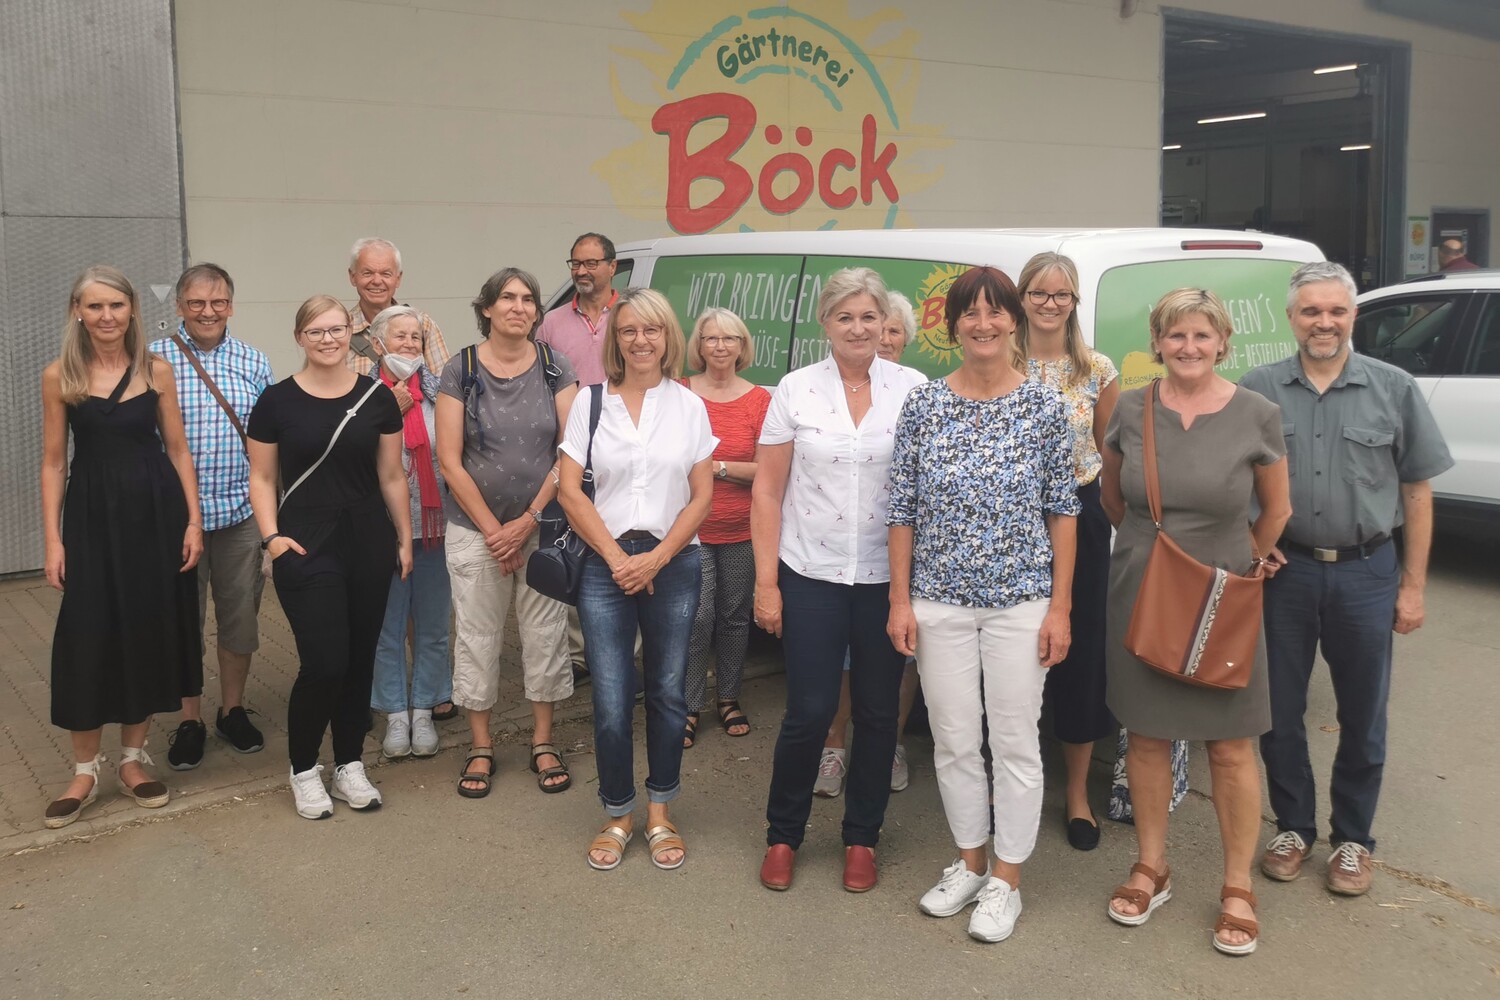 21.07.2022 Mitgliederversammlung in der Gärtnerei Böck in Neufarn